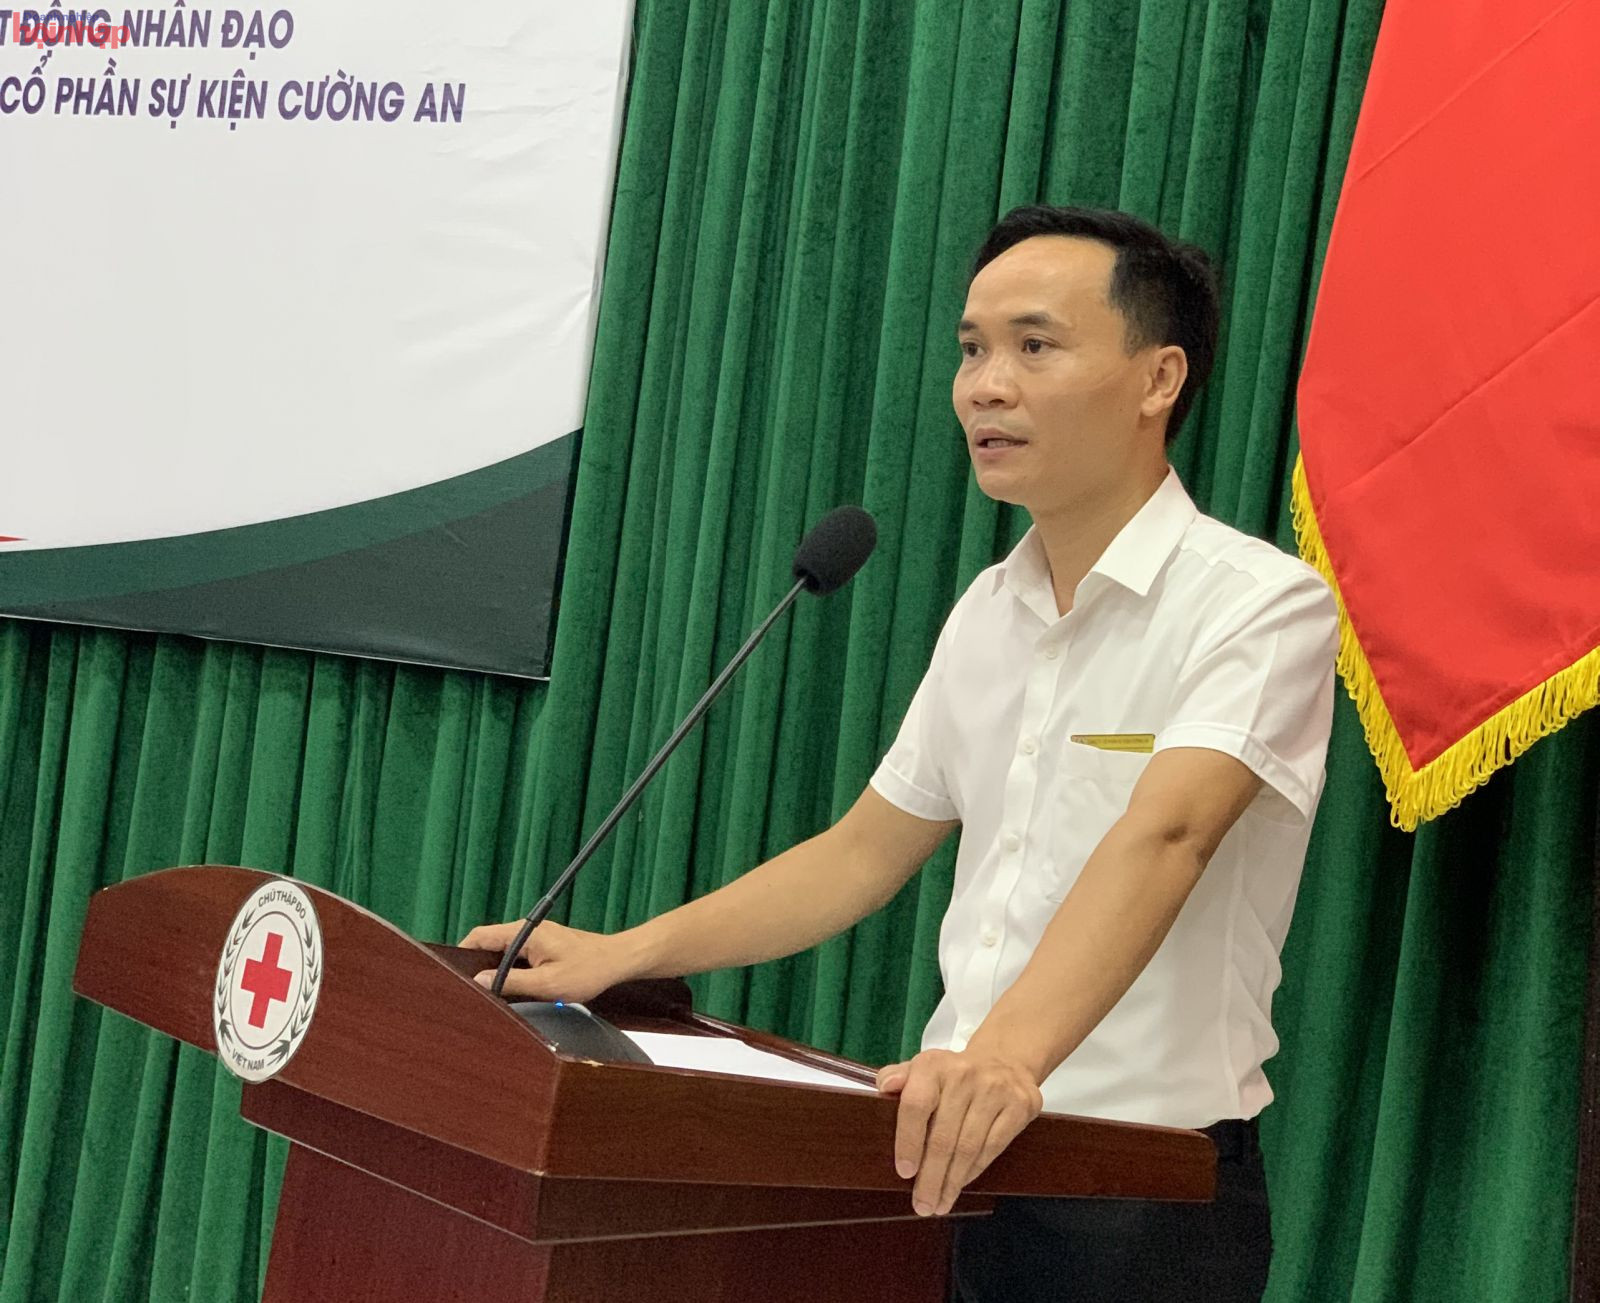 ông Nguyễn Văn Cường - Giám đốc Công ty cổ phần sự kiện Cường An